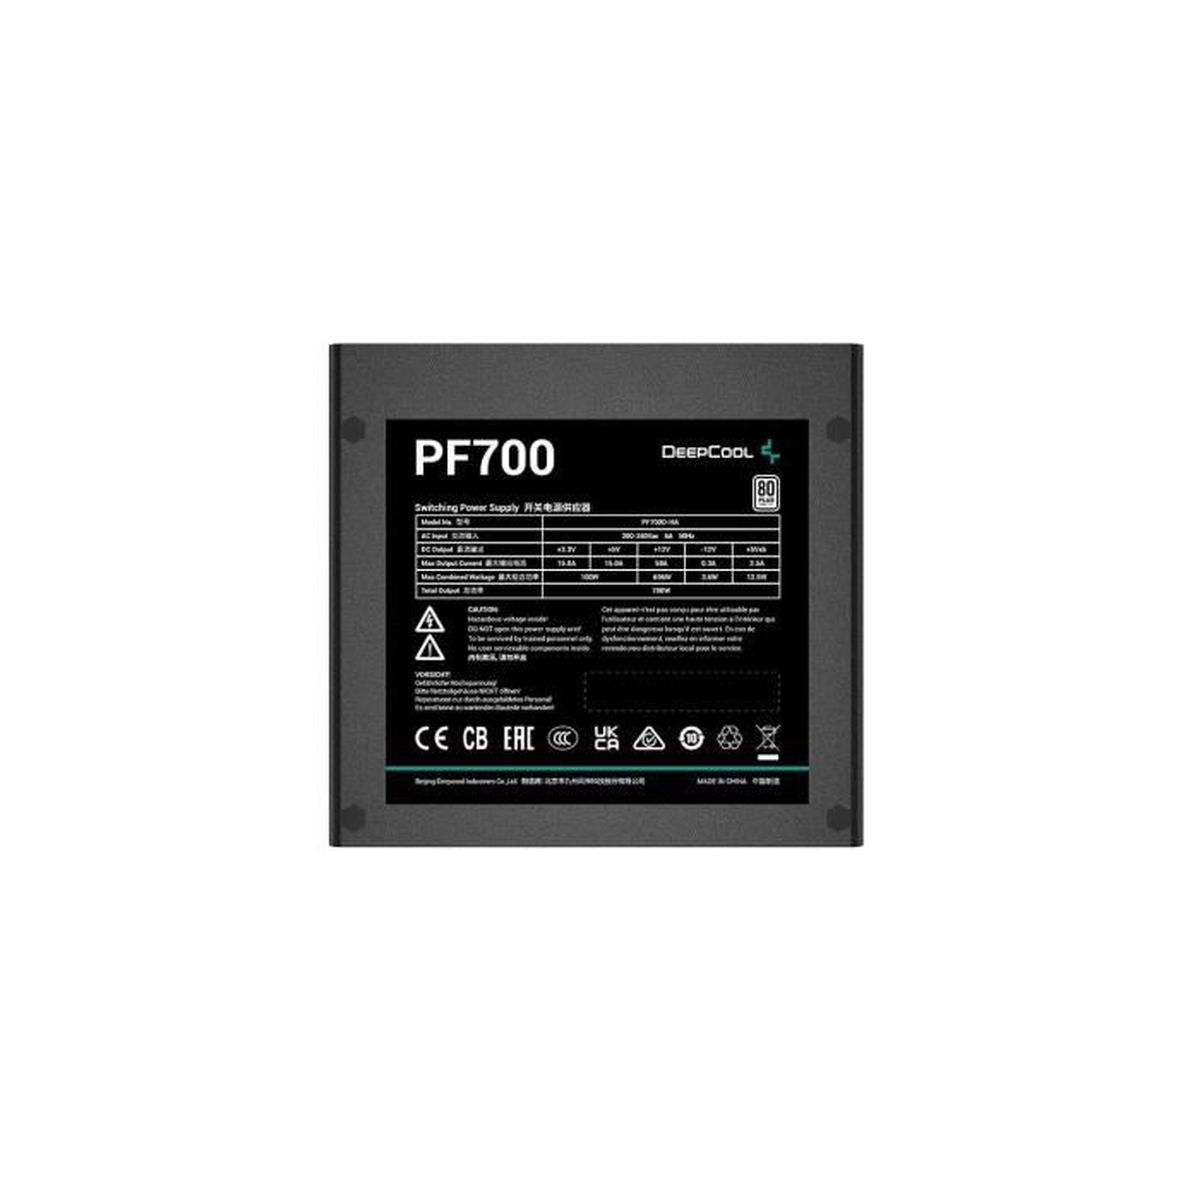 Watt 700 PF700 DEEPCOOL PC-Netzteil